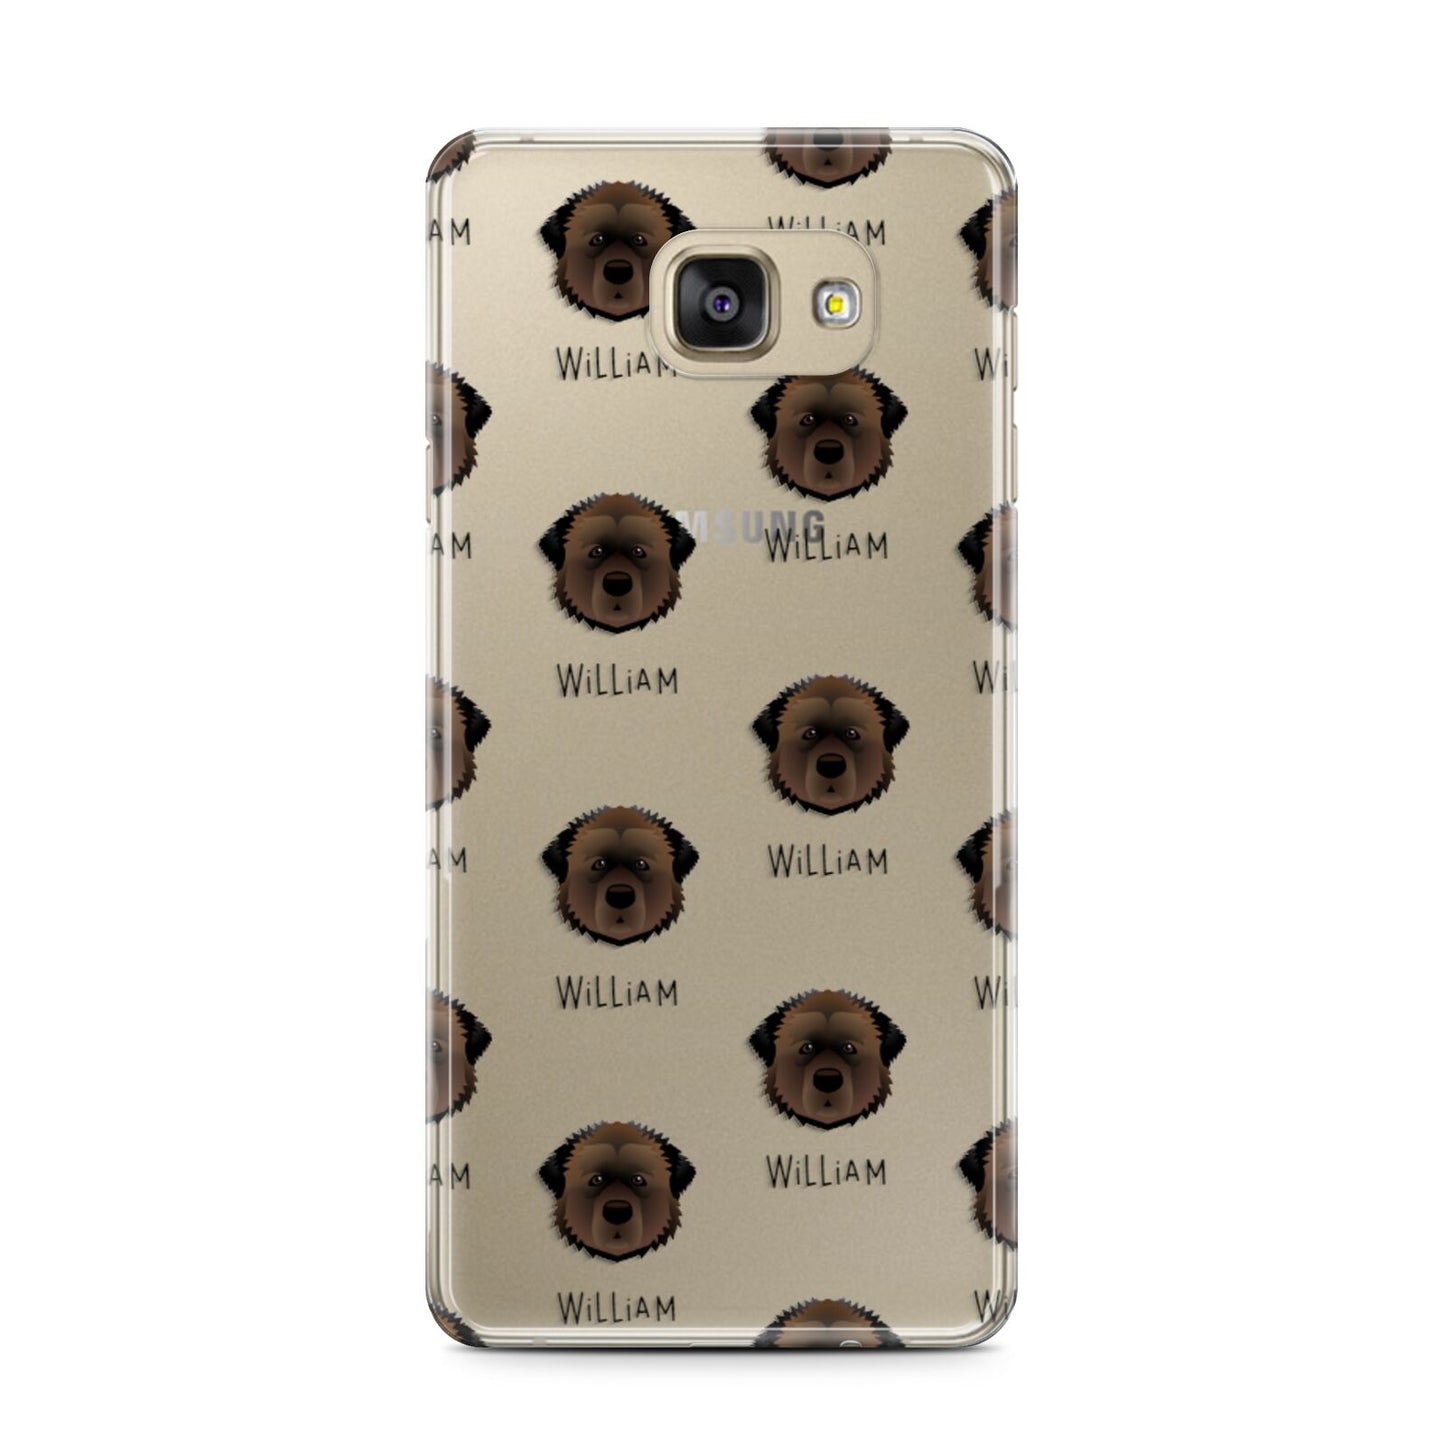 Estrela Mountain Dog Icon with Name Samsung Galaxy A7 2016 Case on gold phone